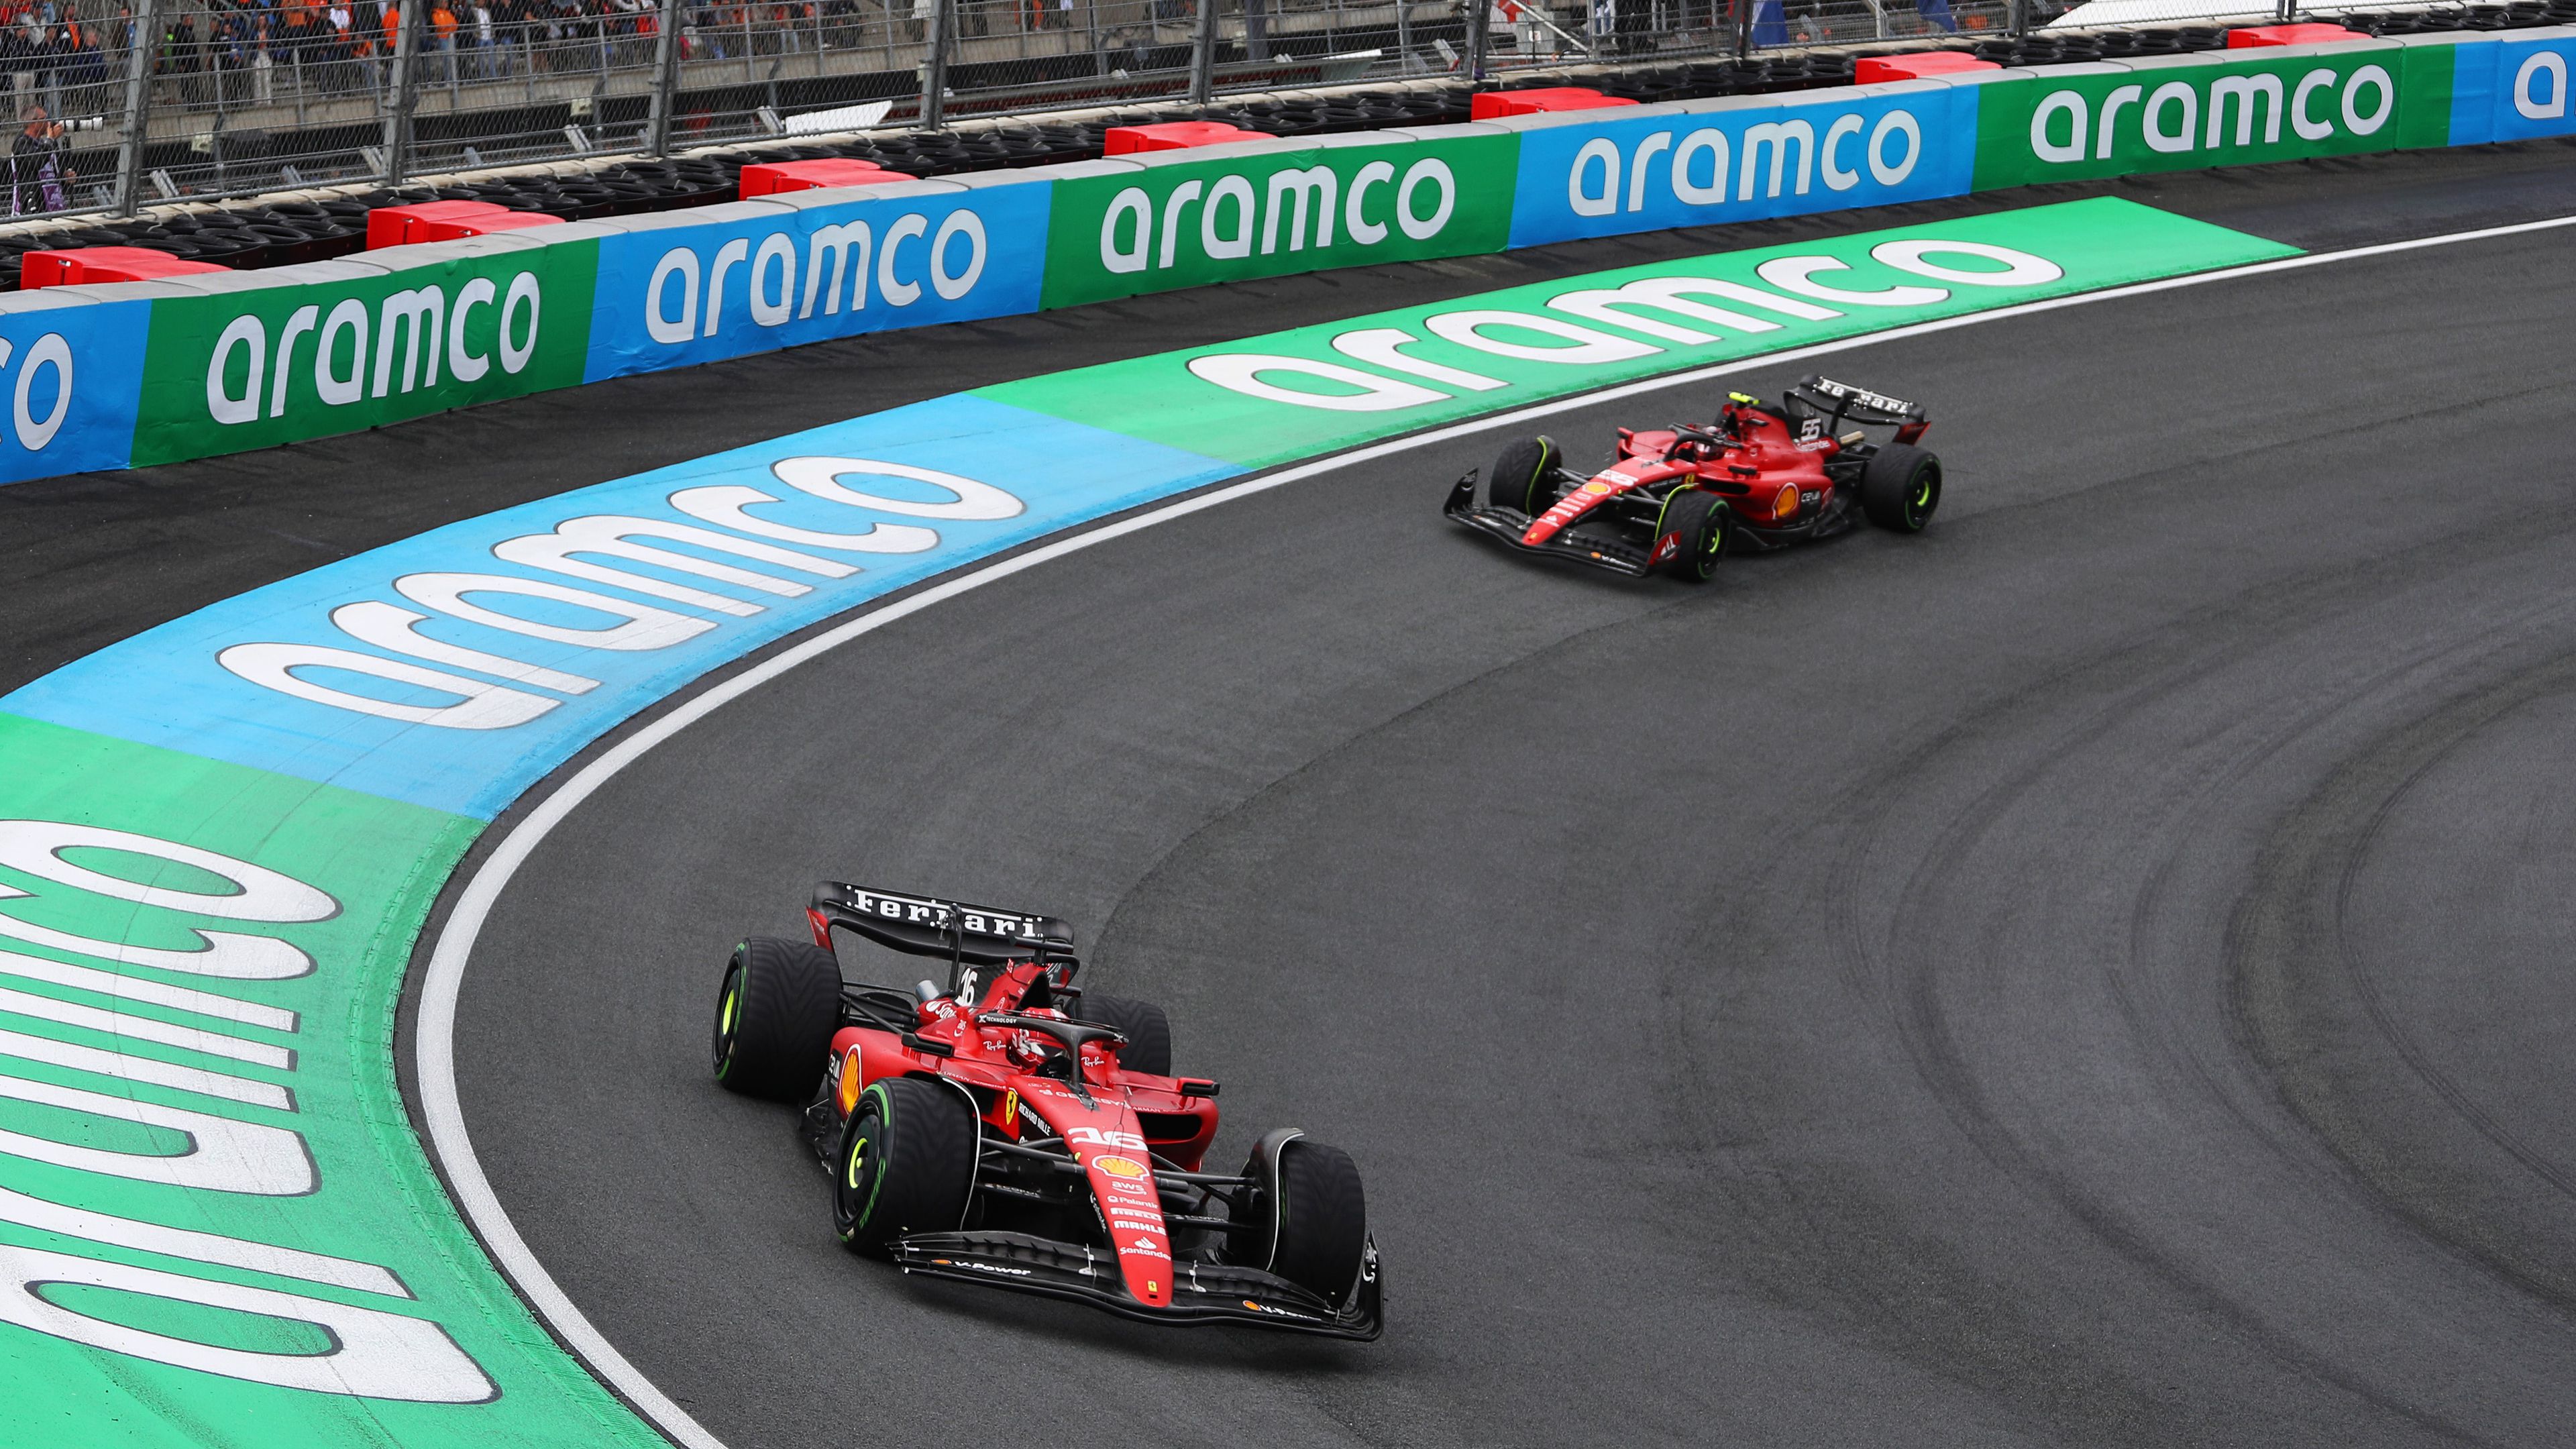 Hazatér a bukdácsoló Ferrari, Verstappen rekorddöntésre készül – Olasz Nagydíj-beharangozó